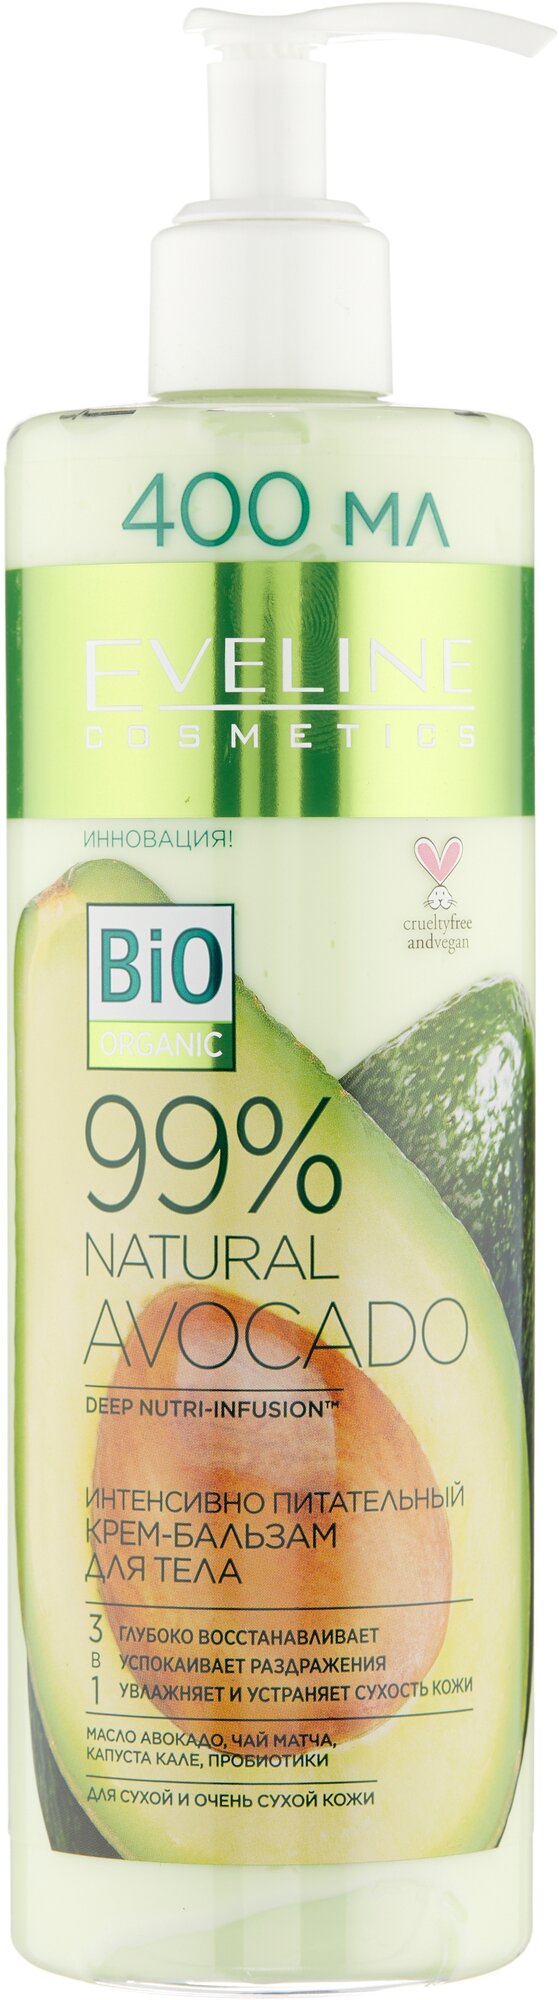 Eveline Интенсивно питательный крем-бальзам для тела - avocado серии 99% Natural, 400 мл